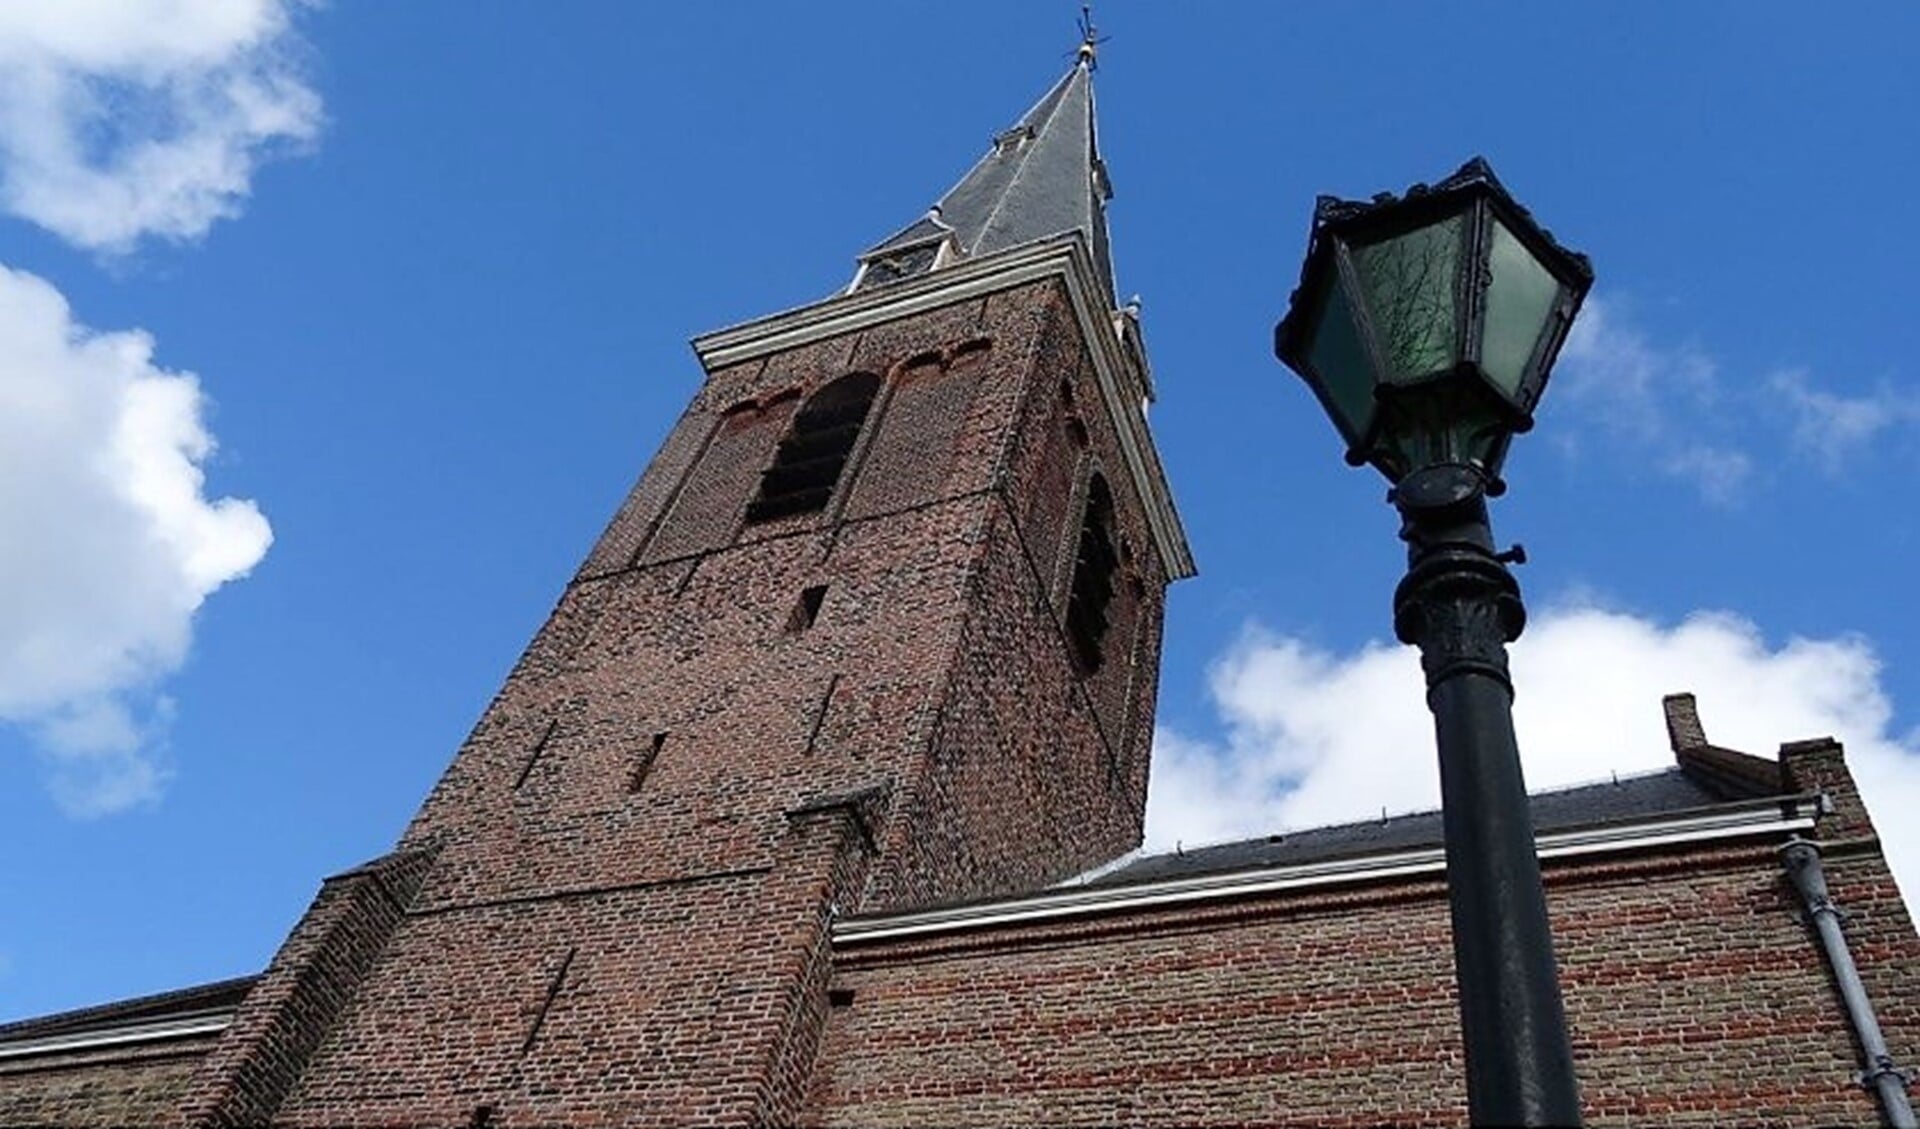 De klokken in de toren van de Oude Kerk in Voorburg luiden morgenochtend 8 minuten en 20 seconden (archieffoto Ap de Heus).